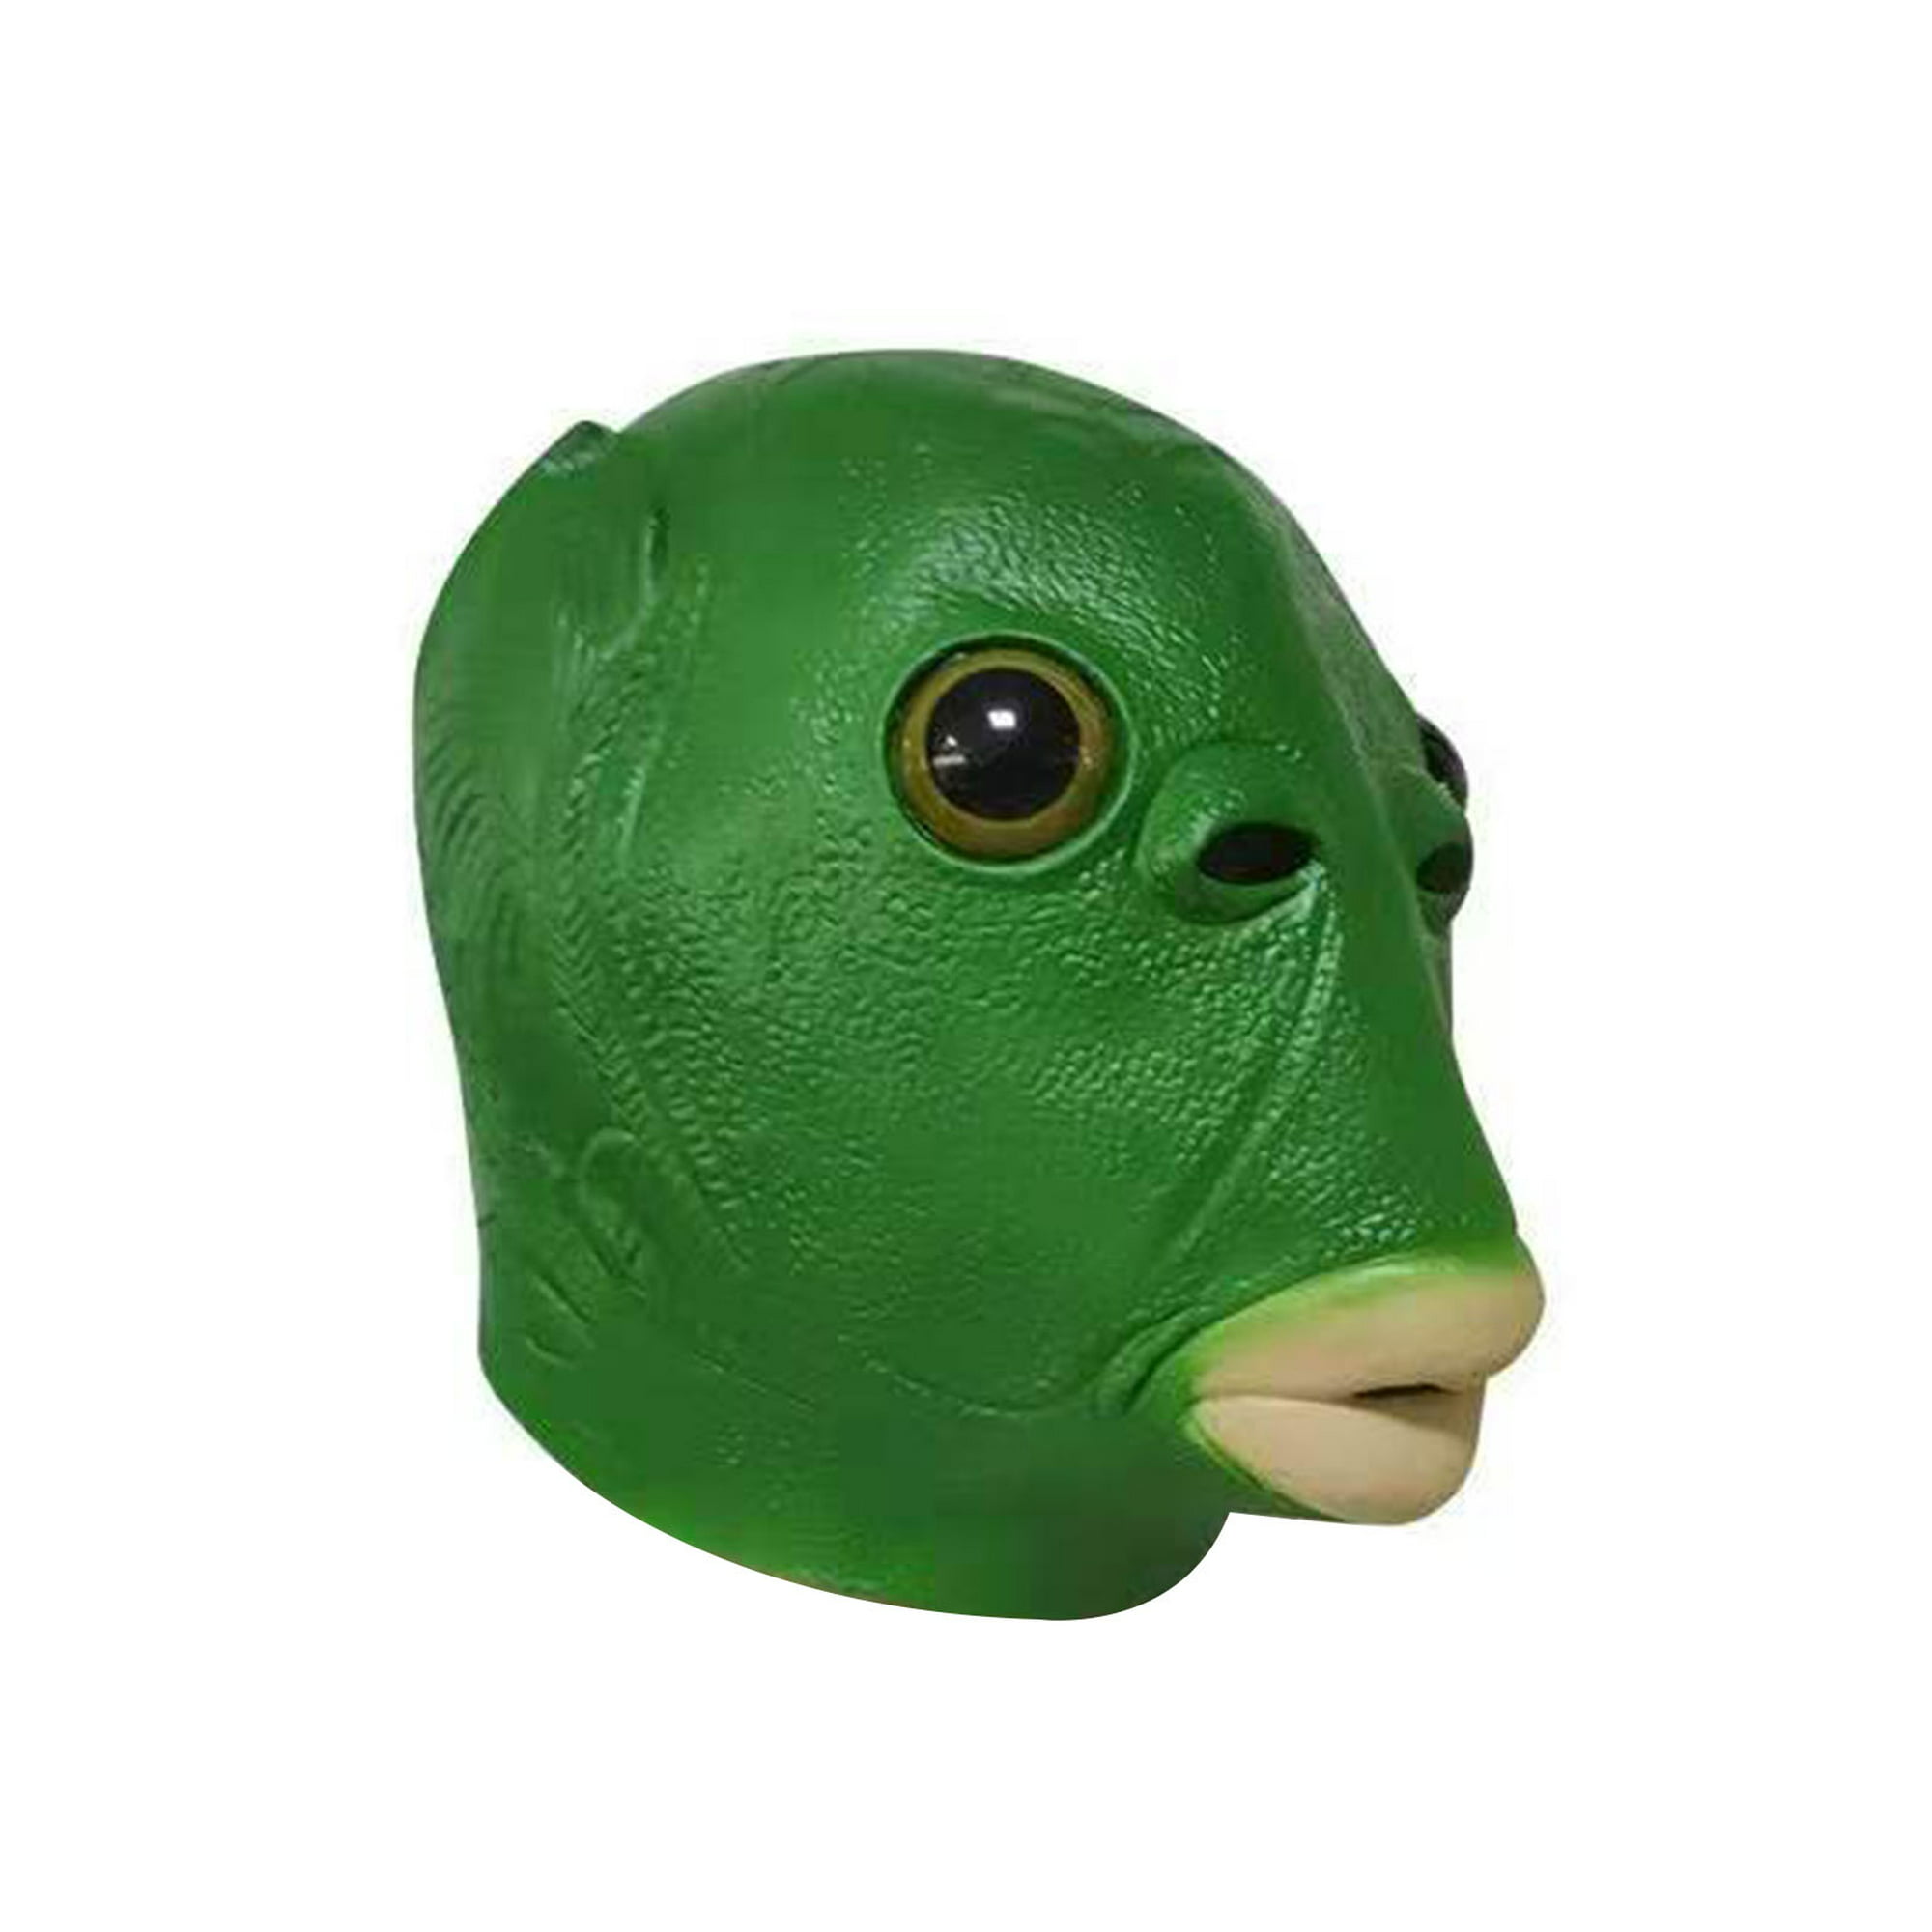 Máscara de cabeza de pez verde para adultos Unisex, tocados, juguetes de  disfraz de Alien divertidos Likrtyny 4ff8fm0ck2fr9hy8